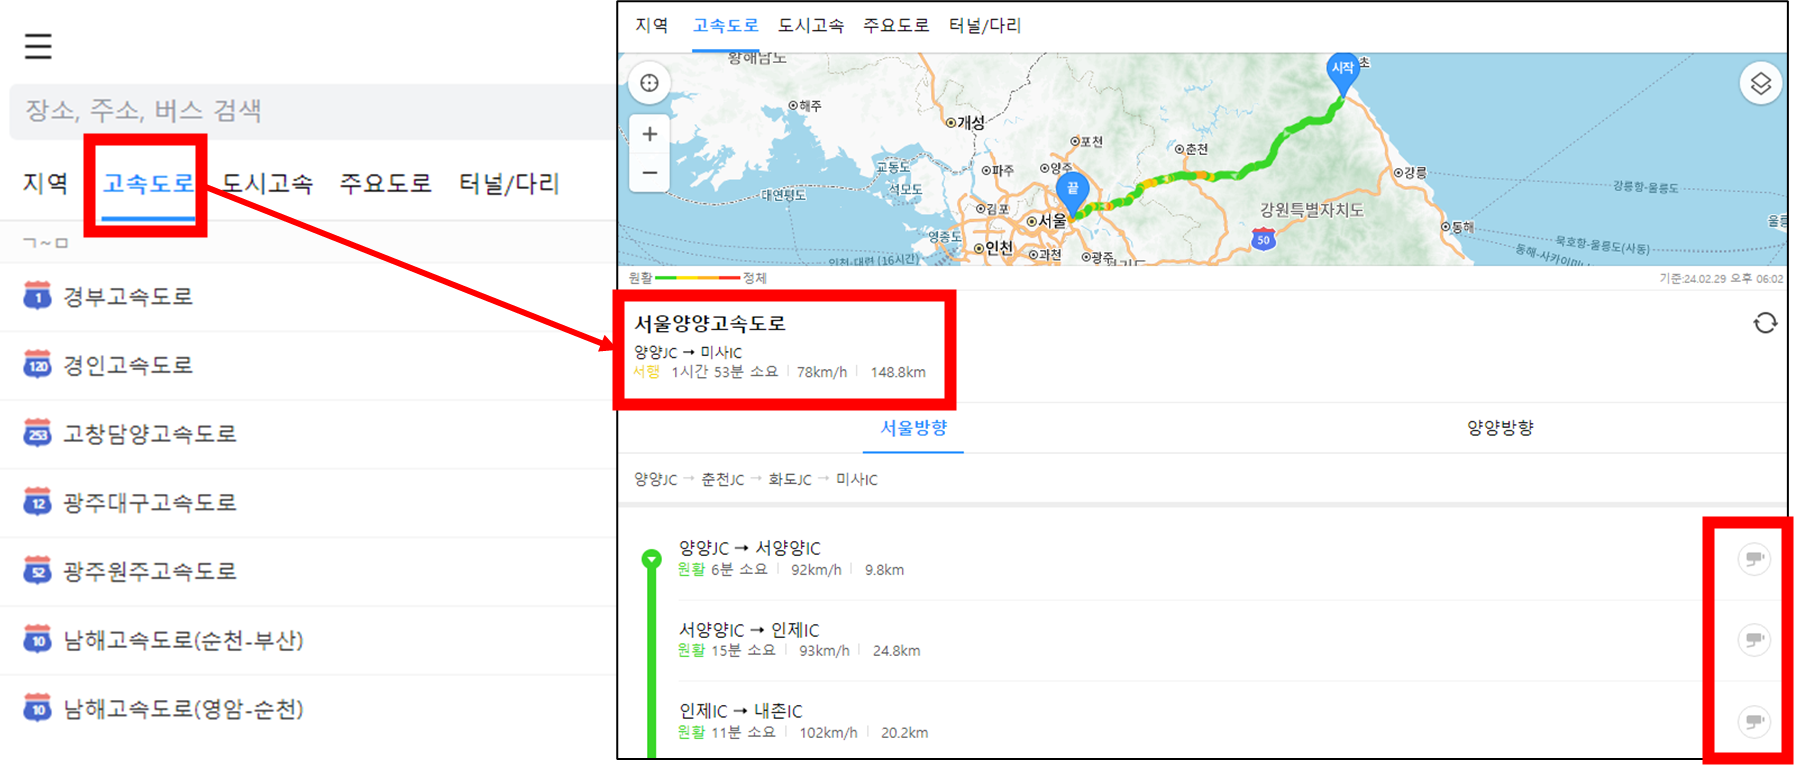 카카오맵에서 고속도로 중 서울양양고속도로를 선택하여 교통상황 확인